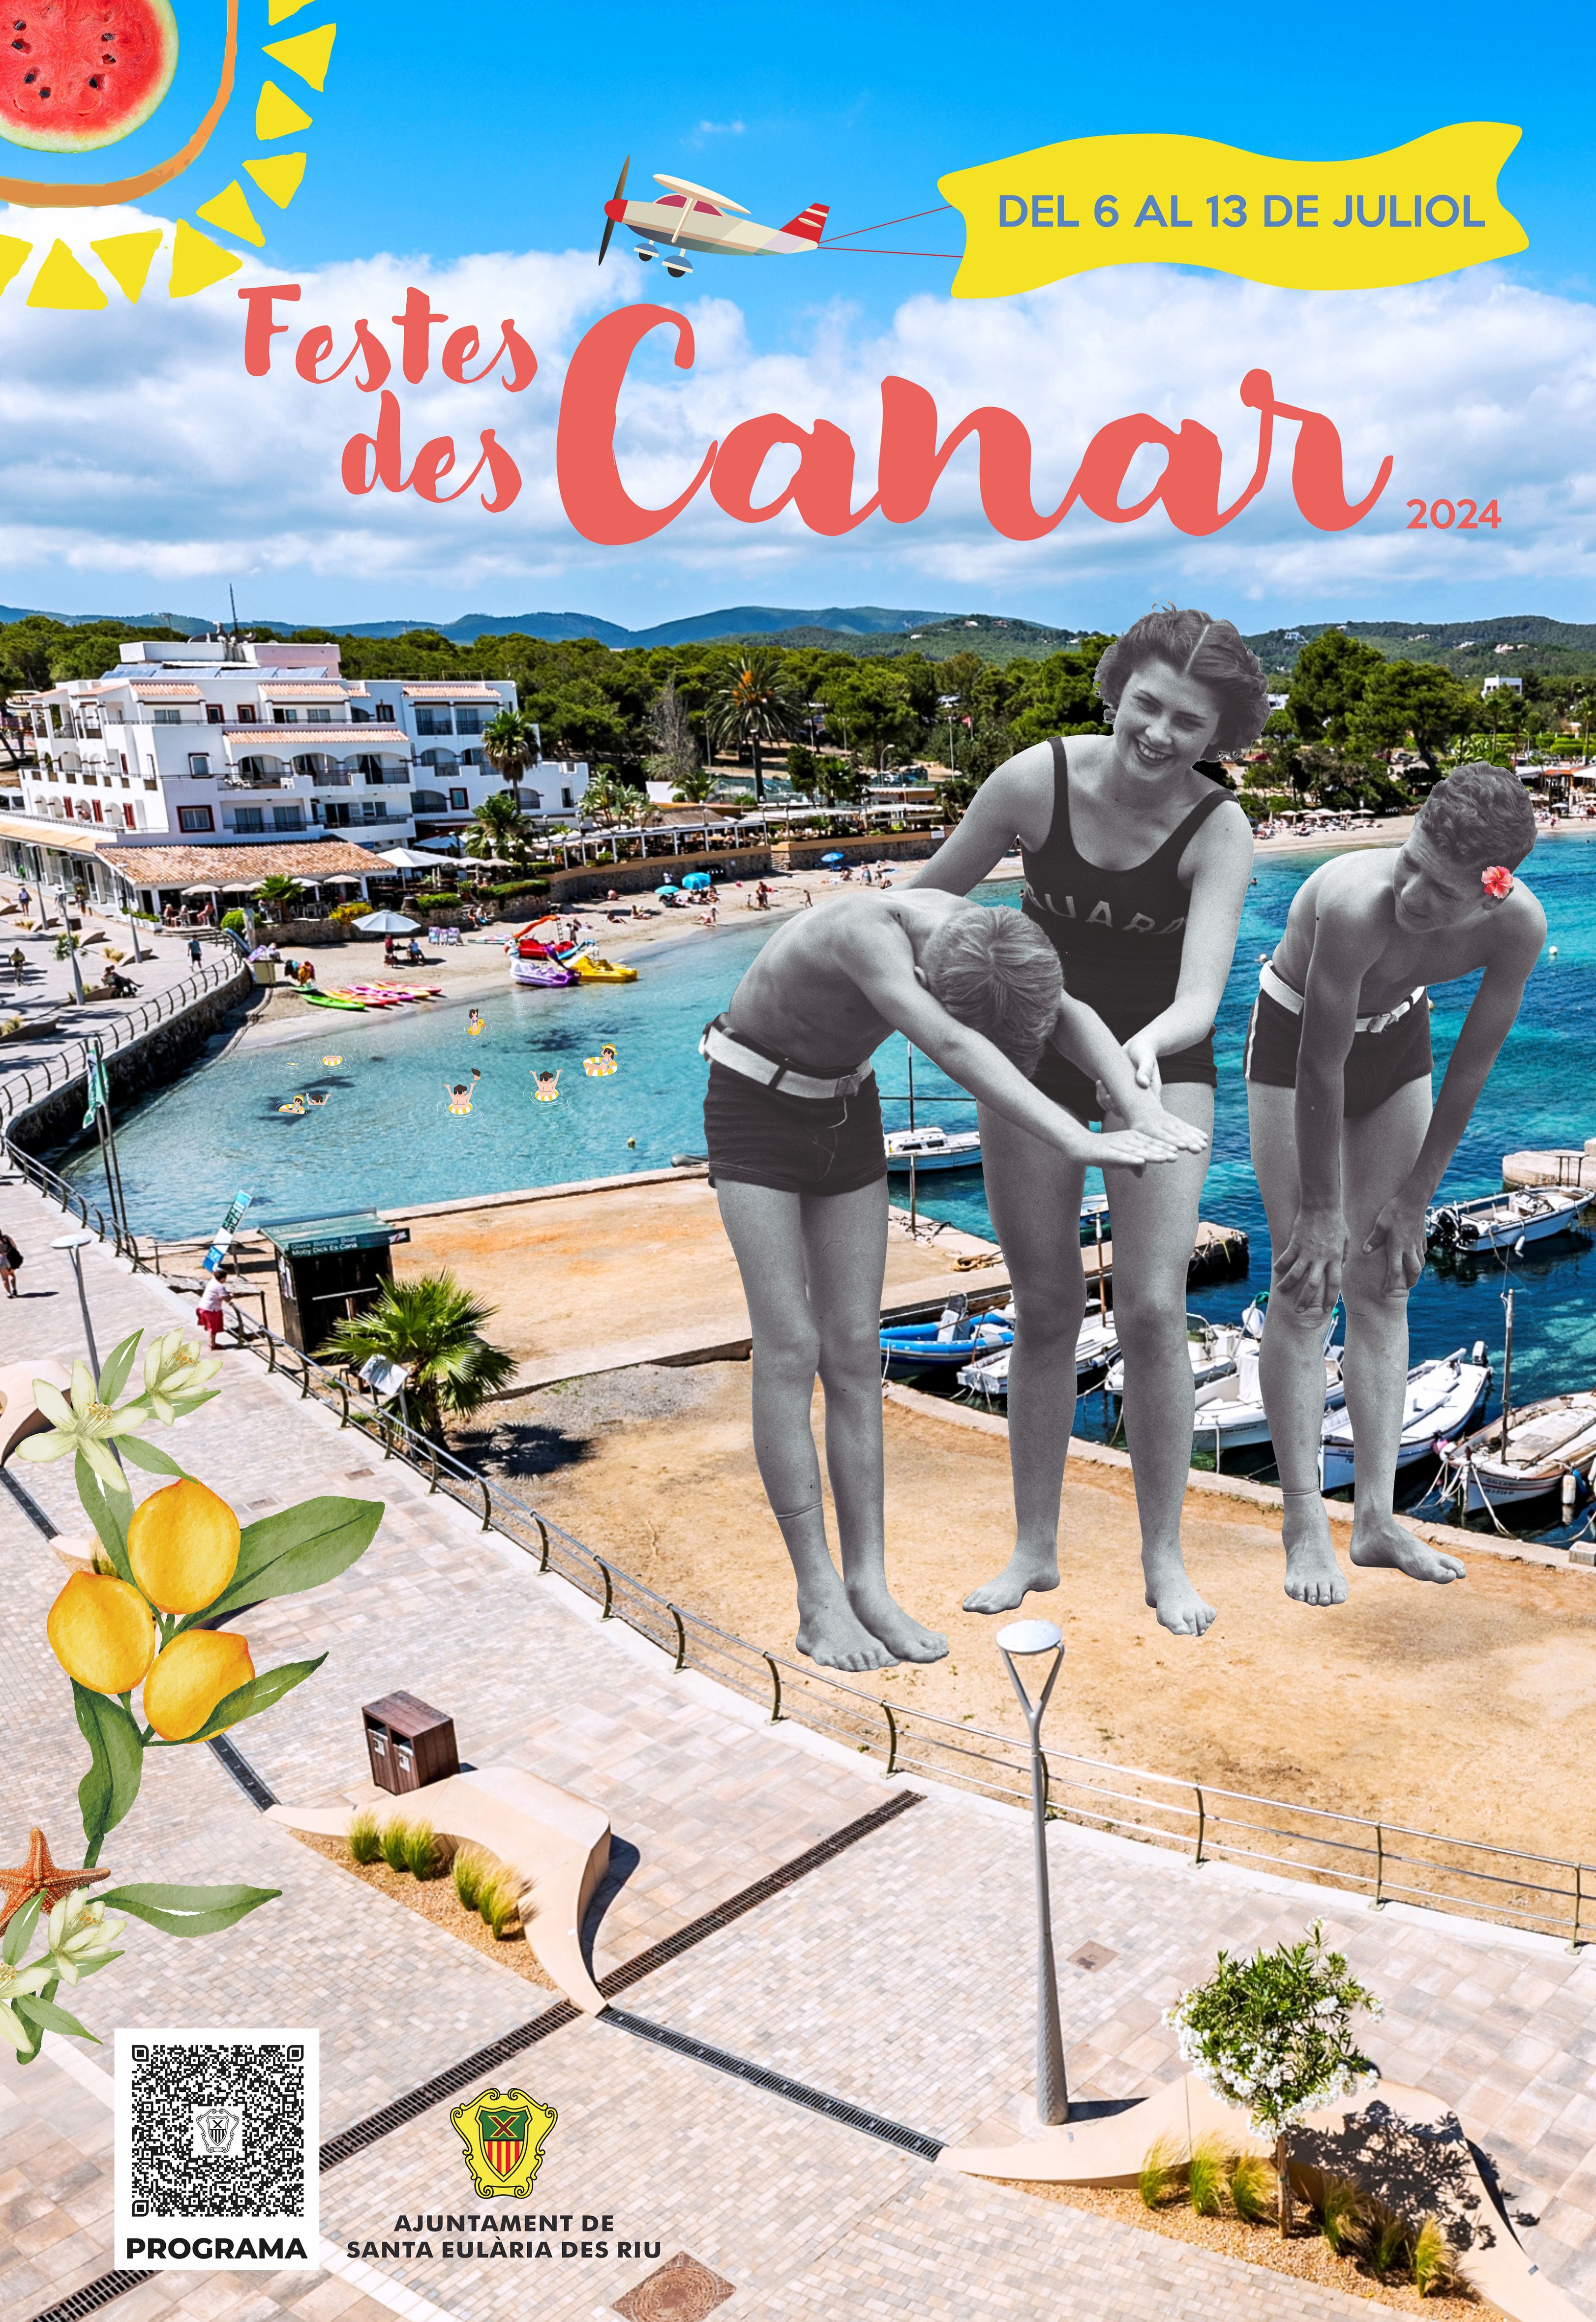 Las fiestas de es Canar contarán con deportes en la playa, fiestas para todos los públicos, tradición y varios conciertos